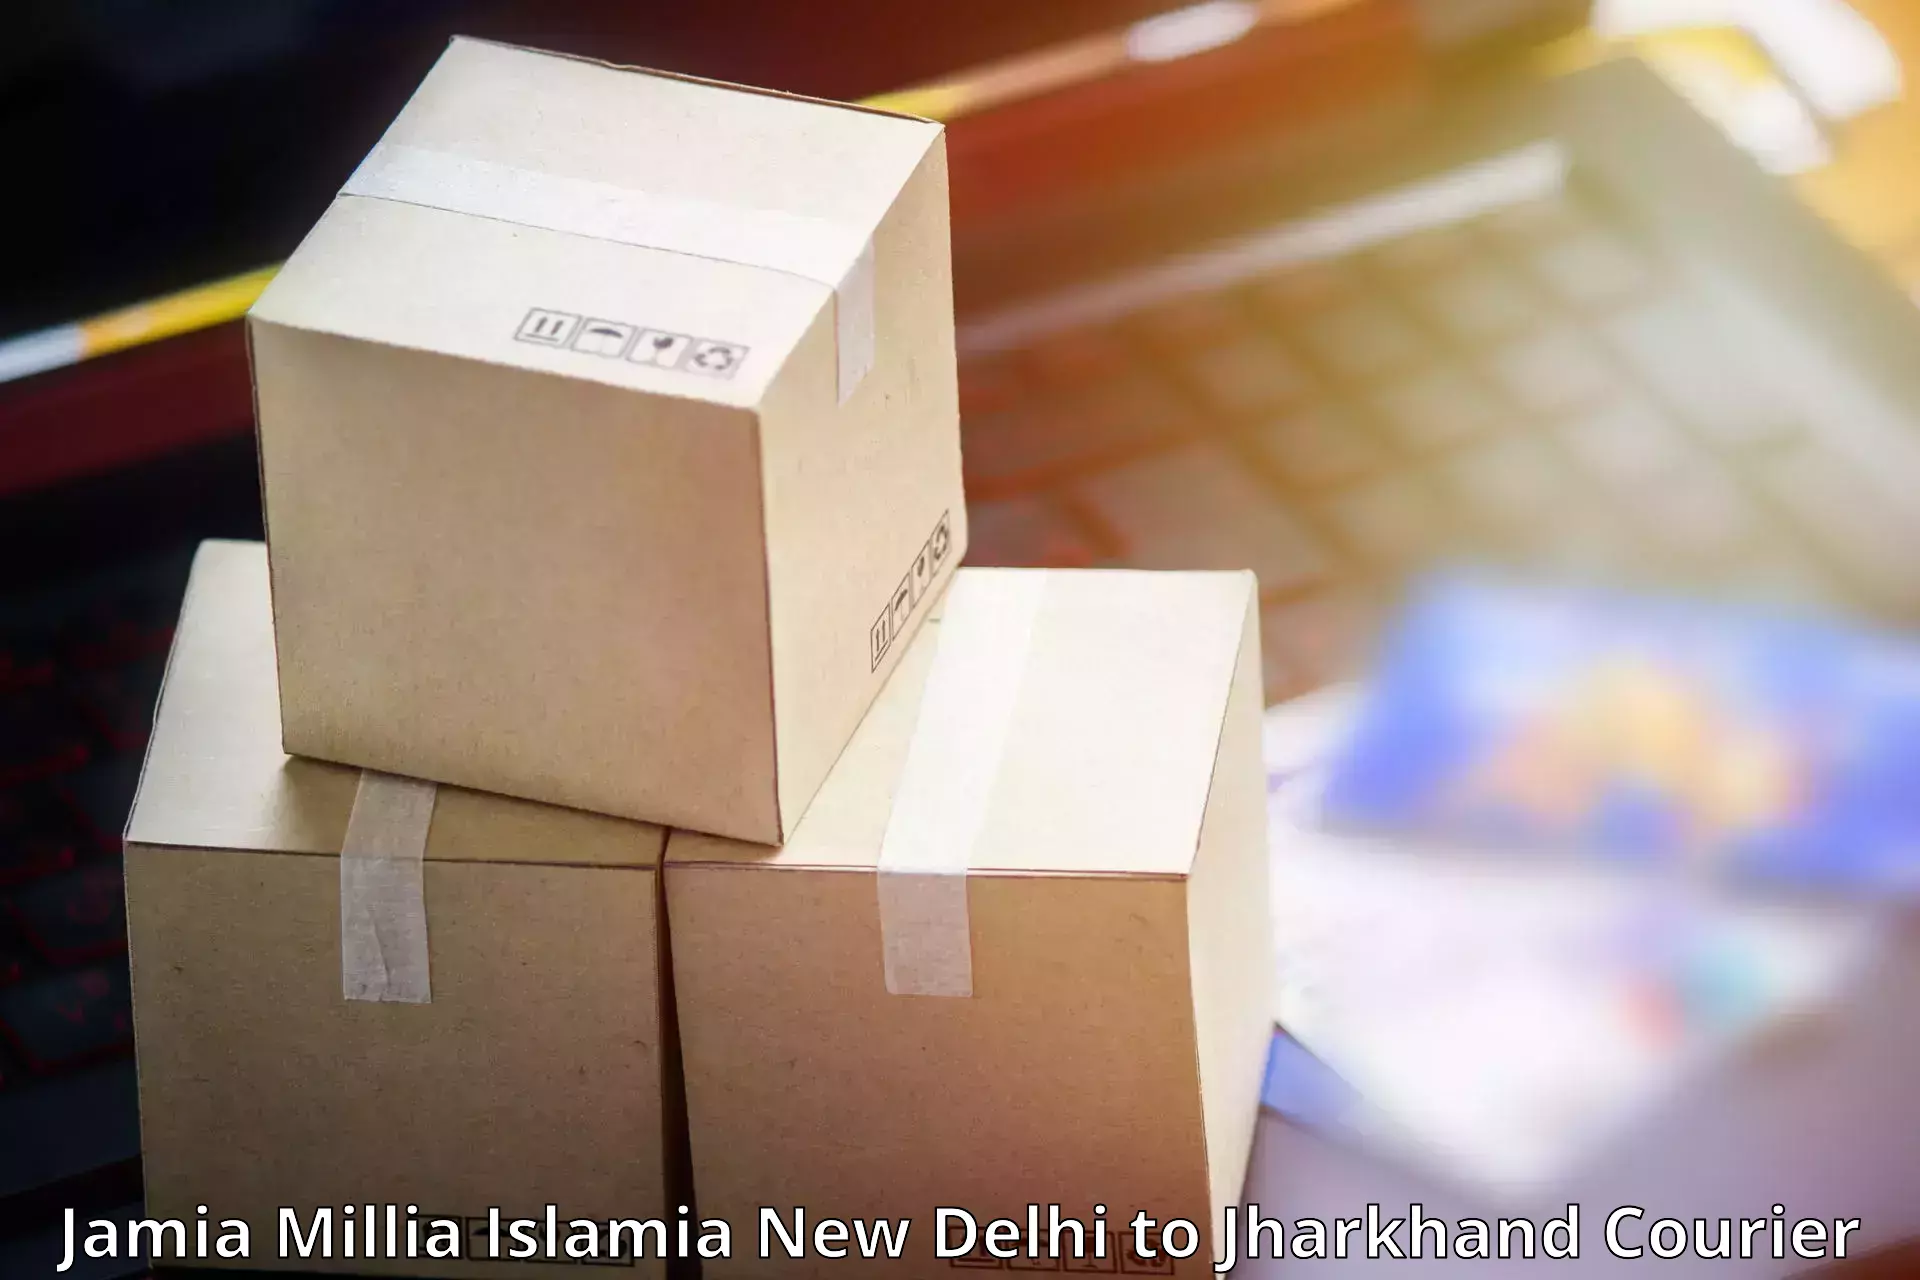 State-of-the-art courier technology Jamia Millia Islamia New Delhi to Chakradharpur